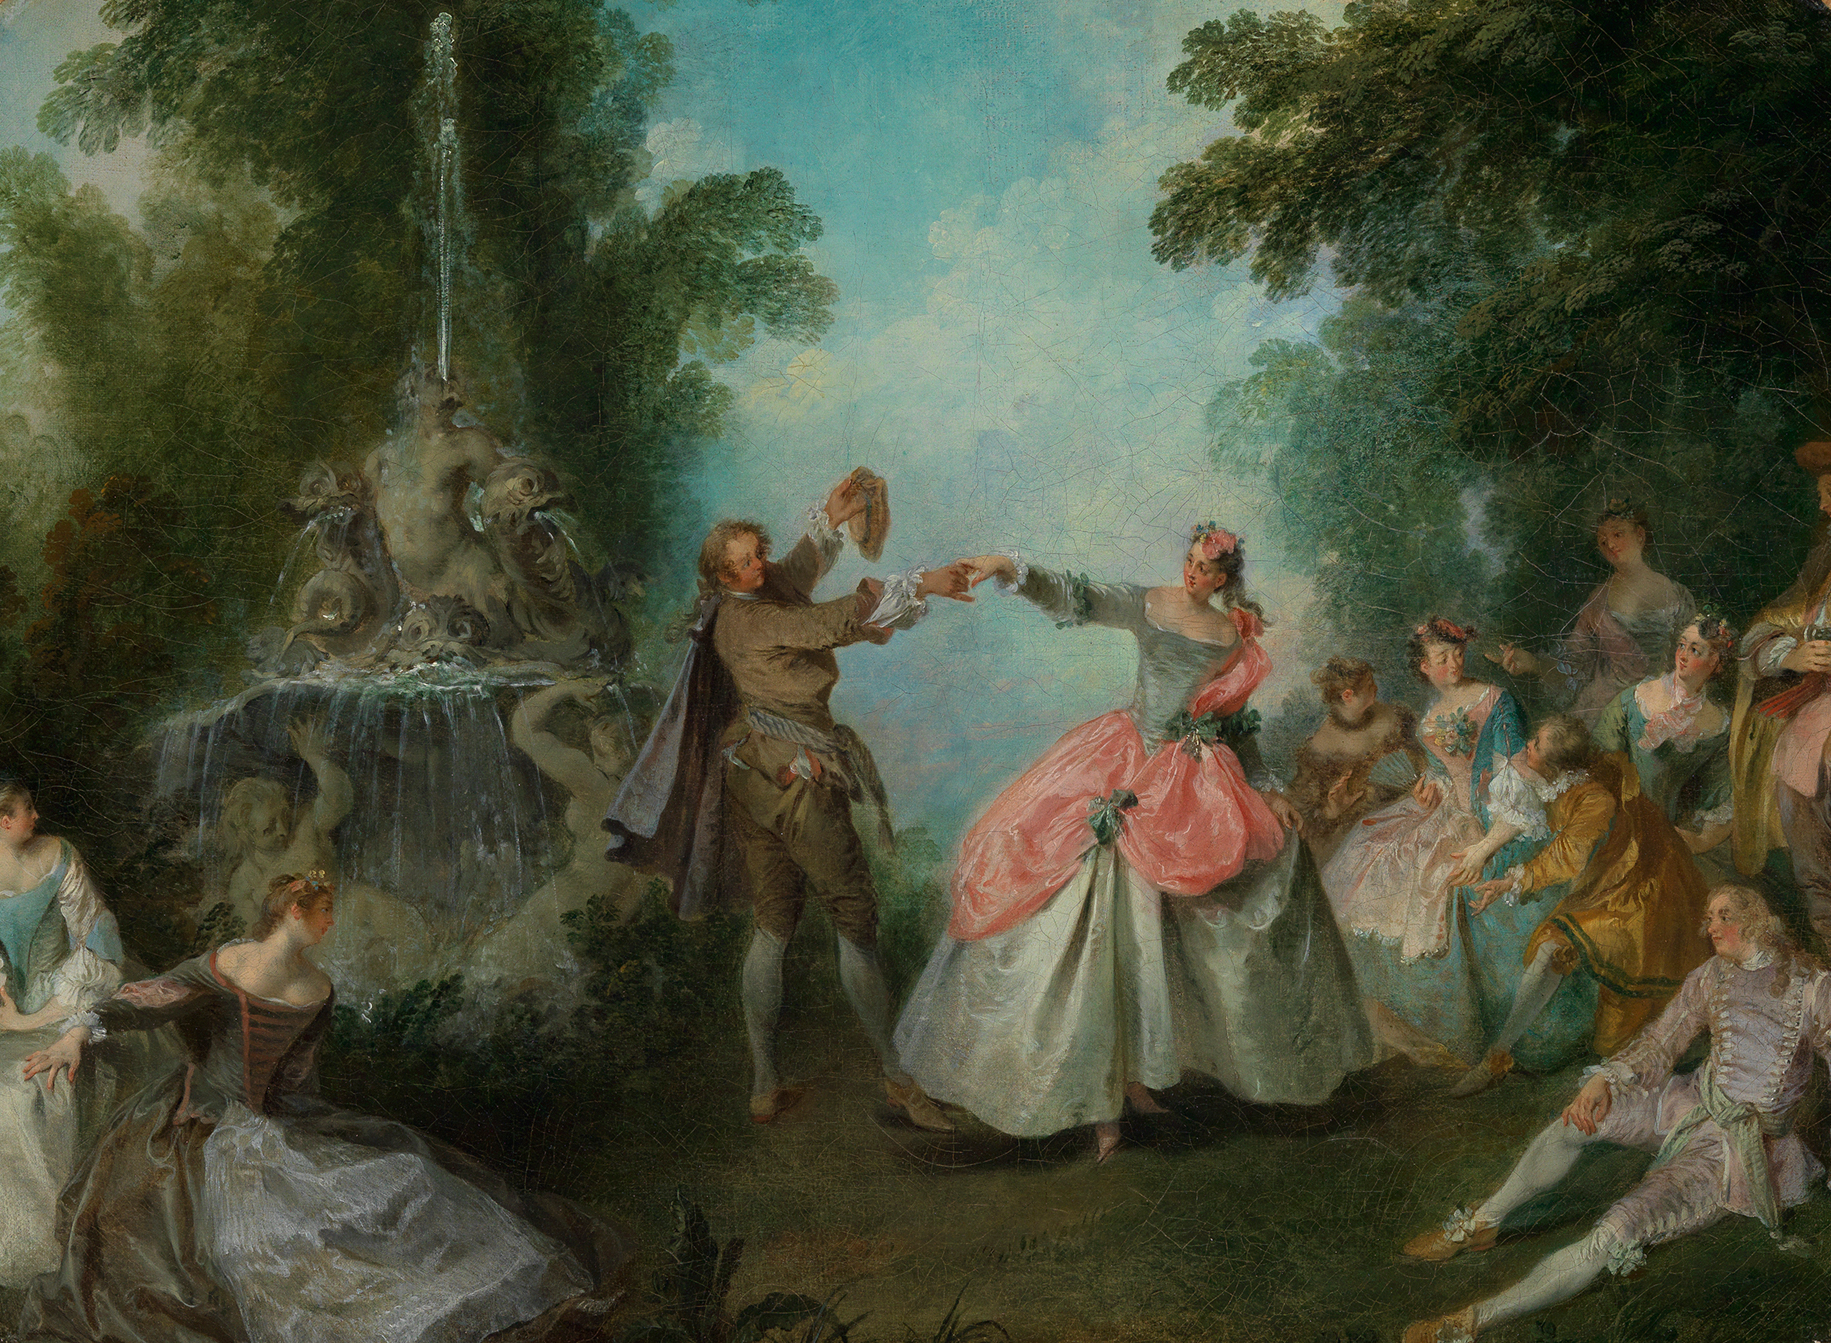 Das Gemälde zeigt ein Menuett tanzendes Paar mit vornehmer Kleidung. Sie tanzen unter freiem Himmel mit Zuschauern.